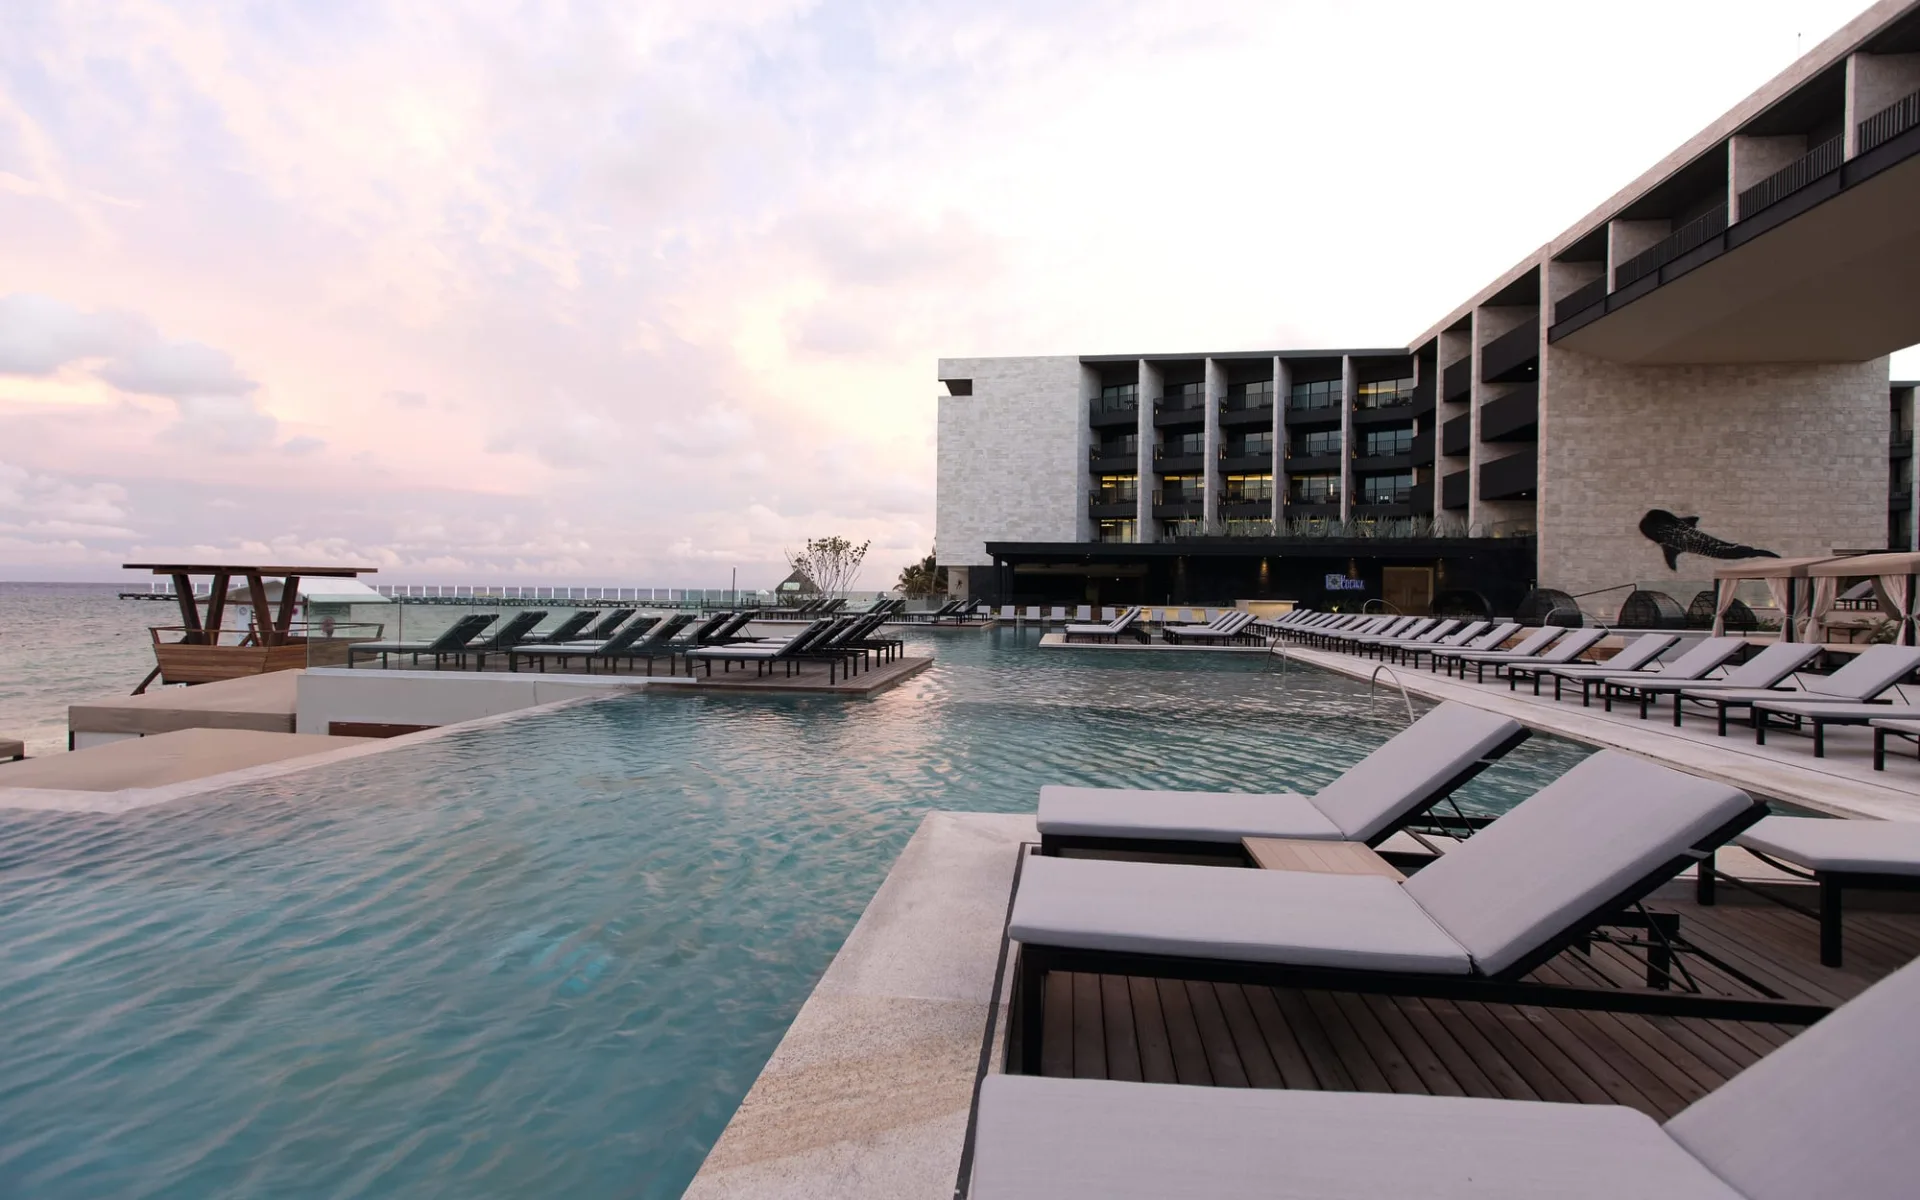 Grand Hyatt Playa del Carmen Resort: pool grand hyatt playa del carmen resort pool liegen meer